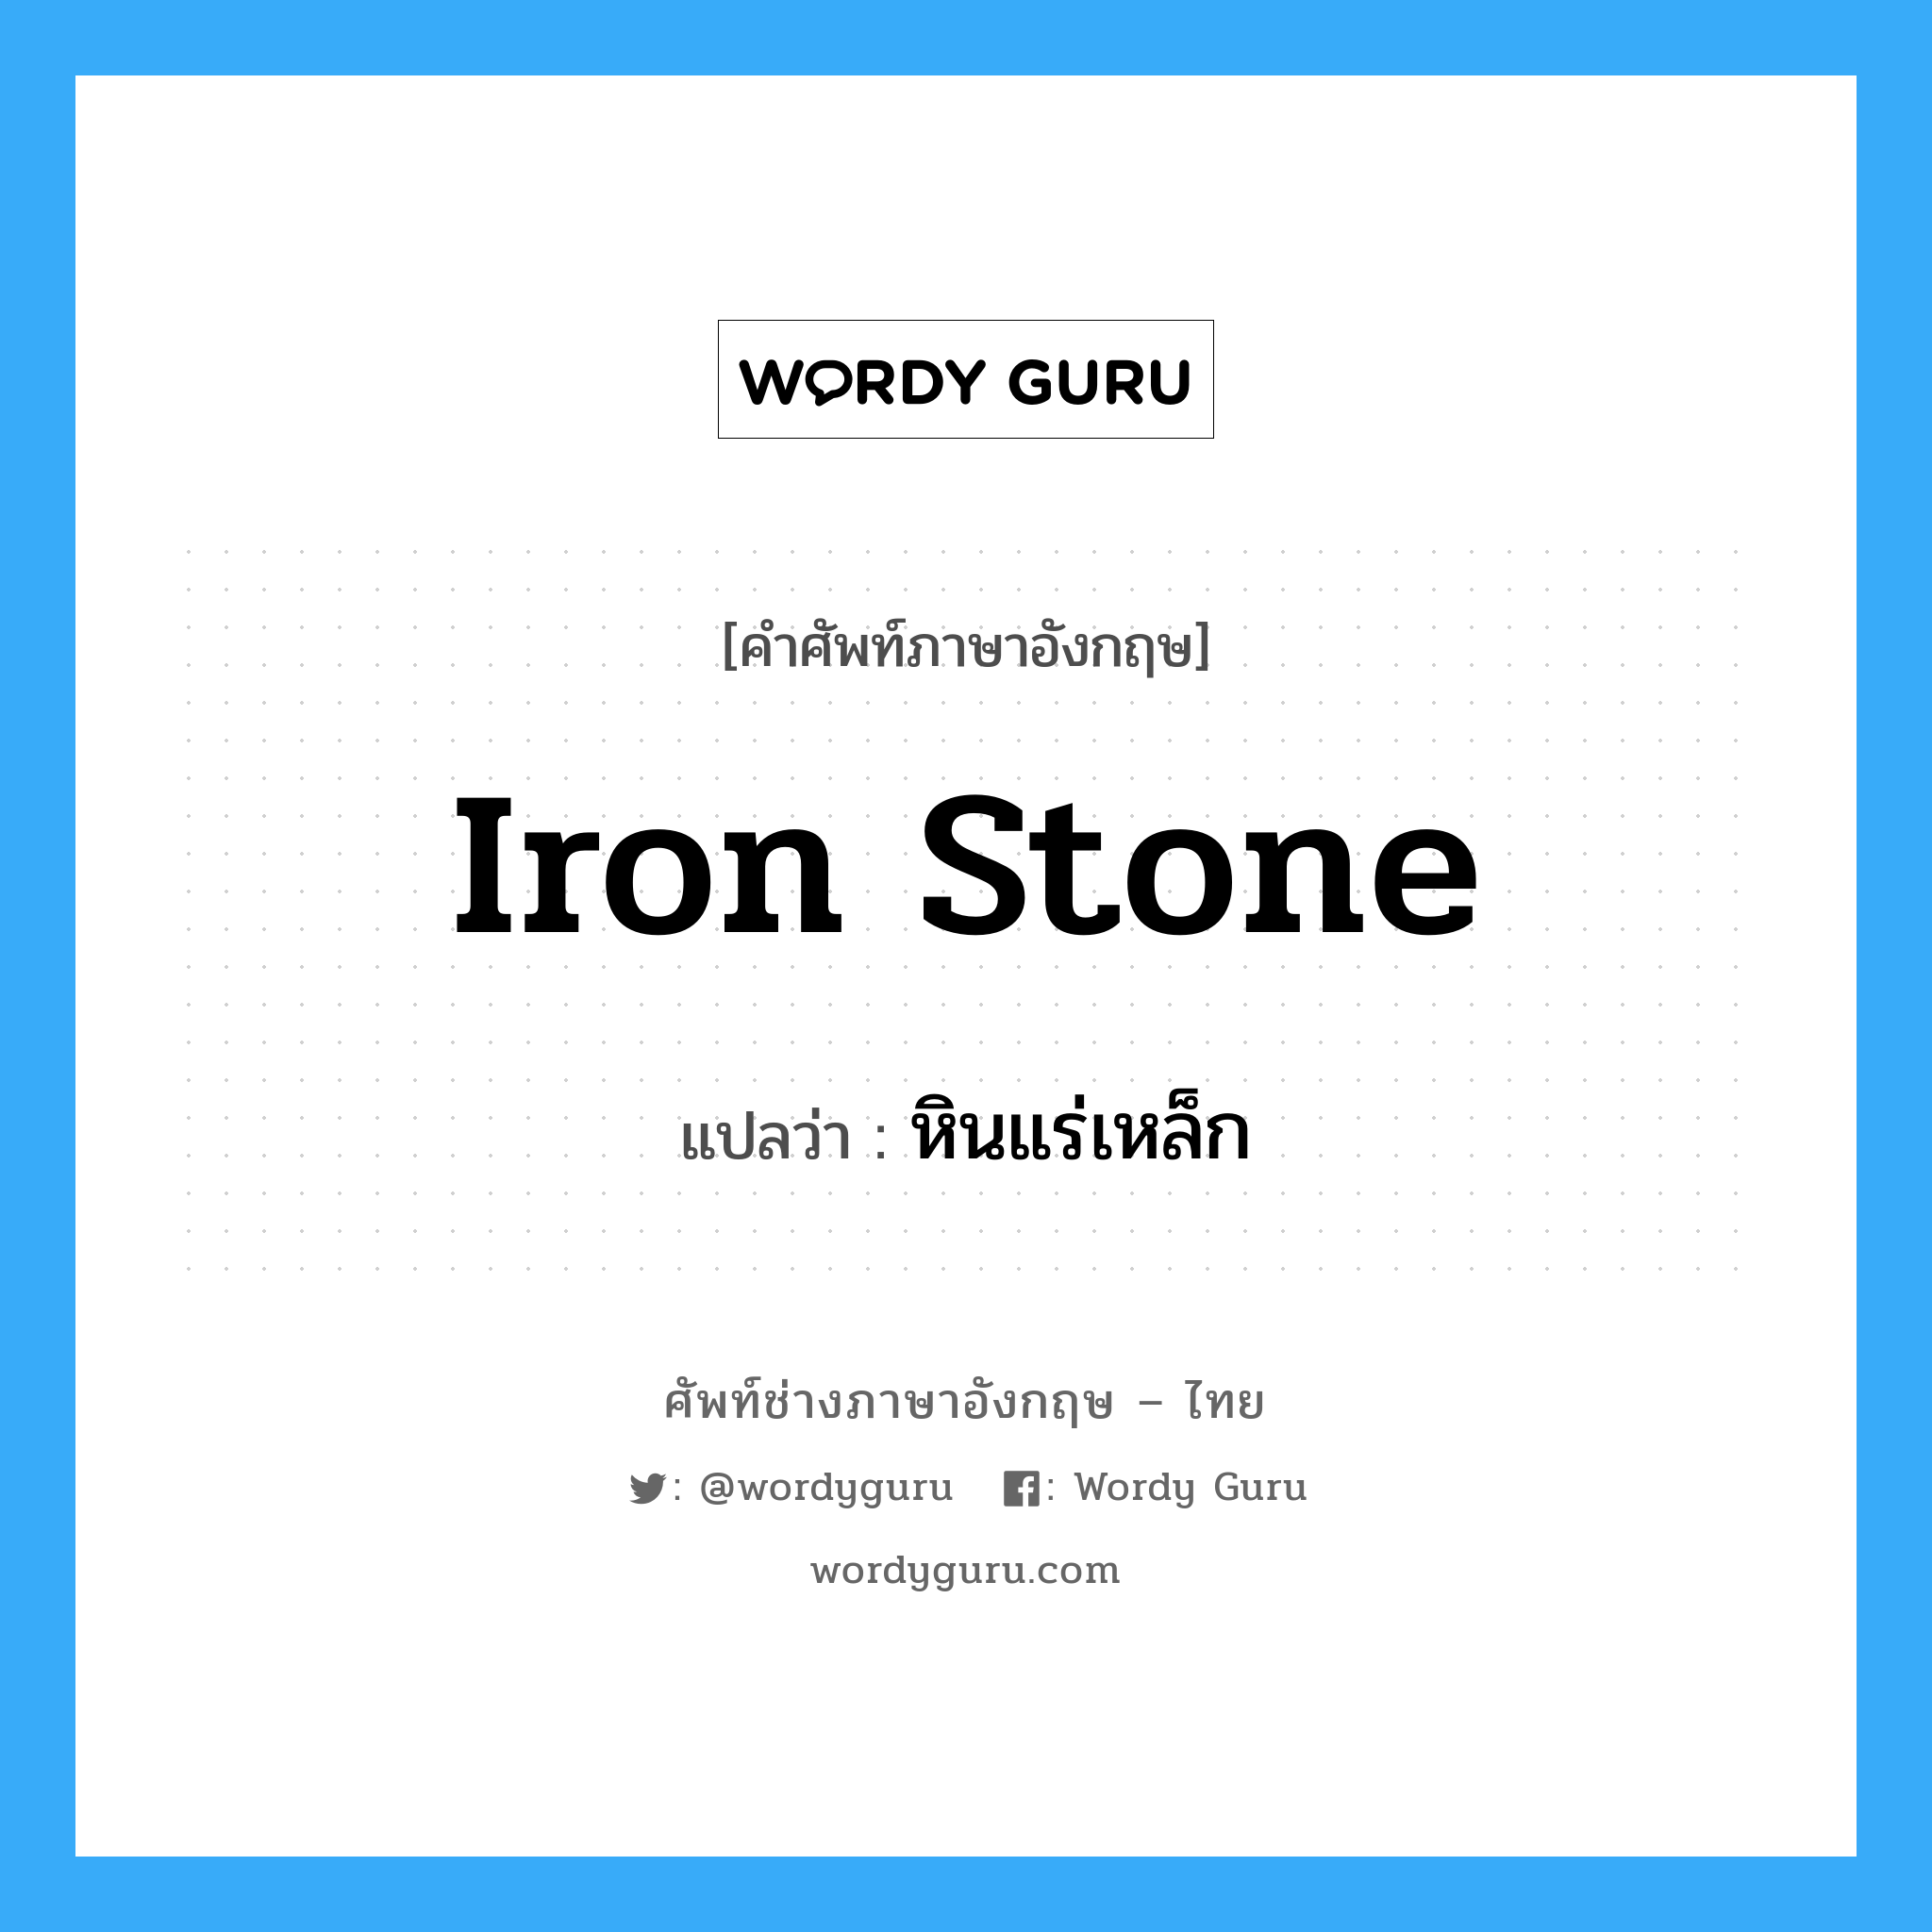 หินแร่เหล็ก ภาษาอังกฤษ?, คำศัพท์ช่างภาษาอังกฤษ - ไทย หินแร่เหล็ก คำศัพท์ภาษาอังกฤษ หินแร่เหล็ก แปลว่า iron stone